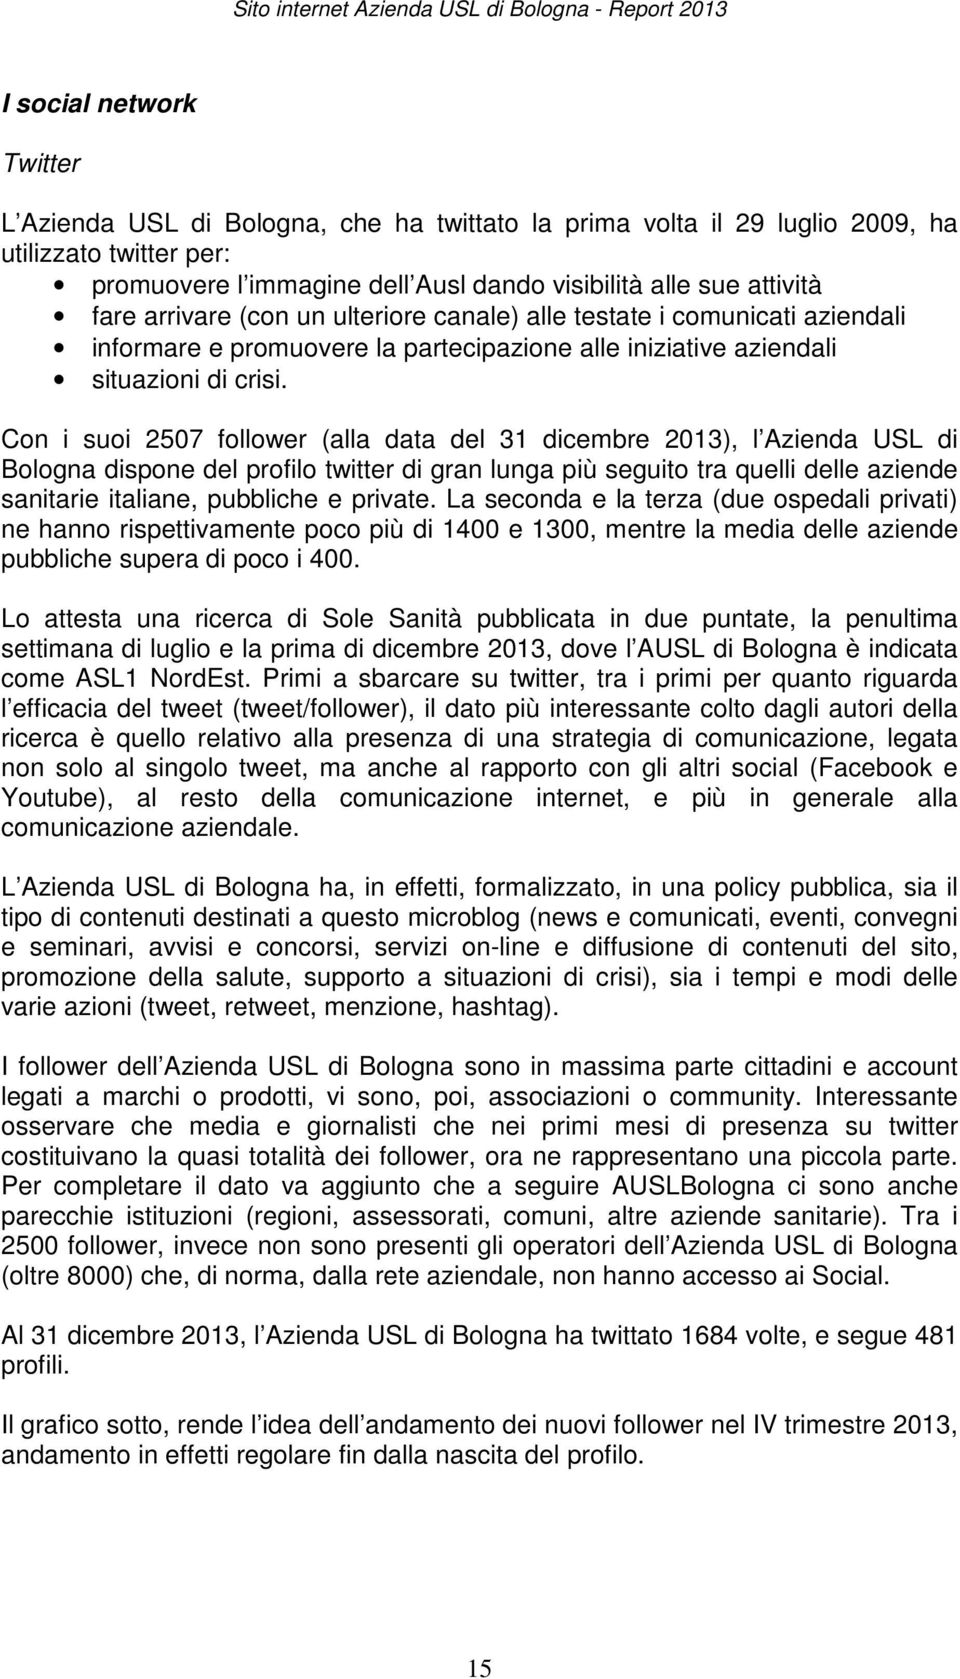 Con i suoi 2507 follower (alla data del 31 dicembre 2013), l Azienda USL di Bologna dispone del profilo twitter di gran lunga più seguito tra quelli delle aziende sanitarie italiane, pubbliche e